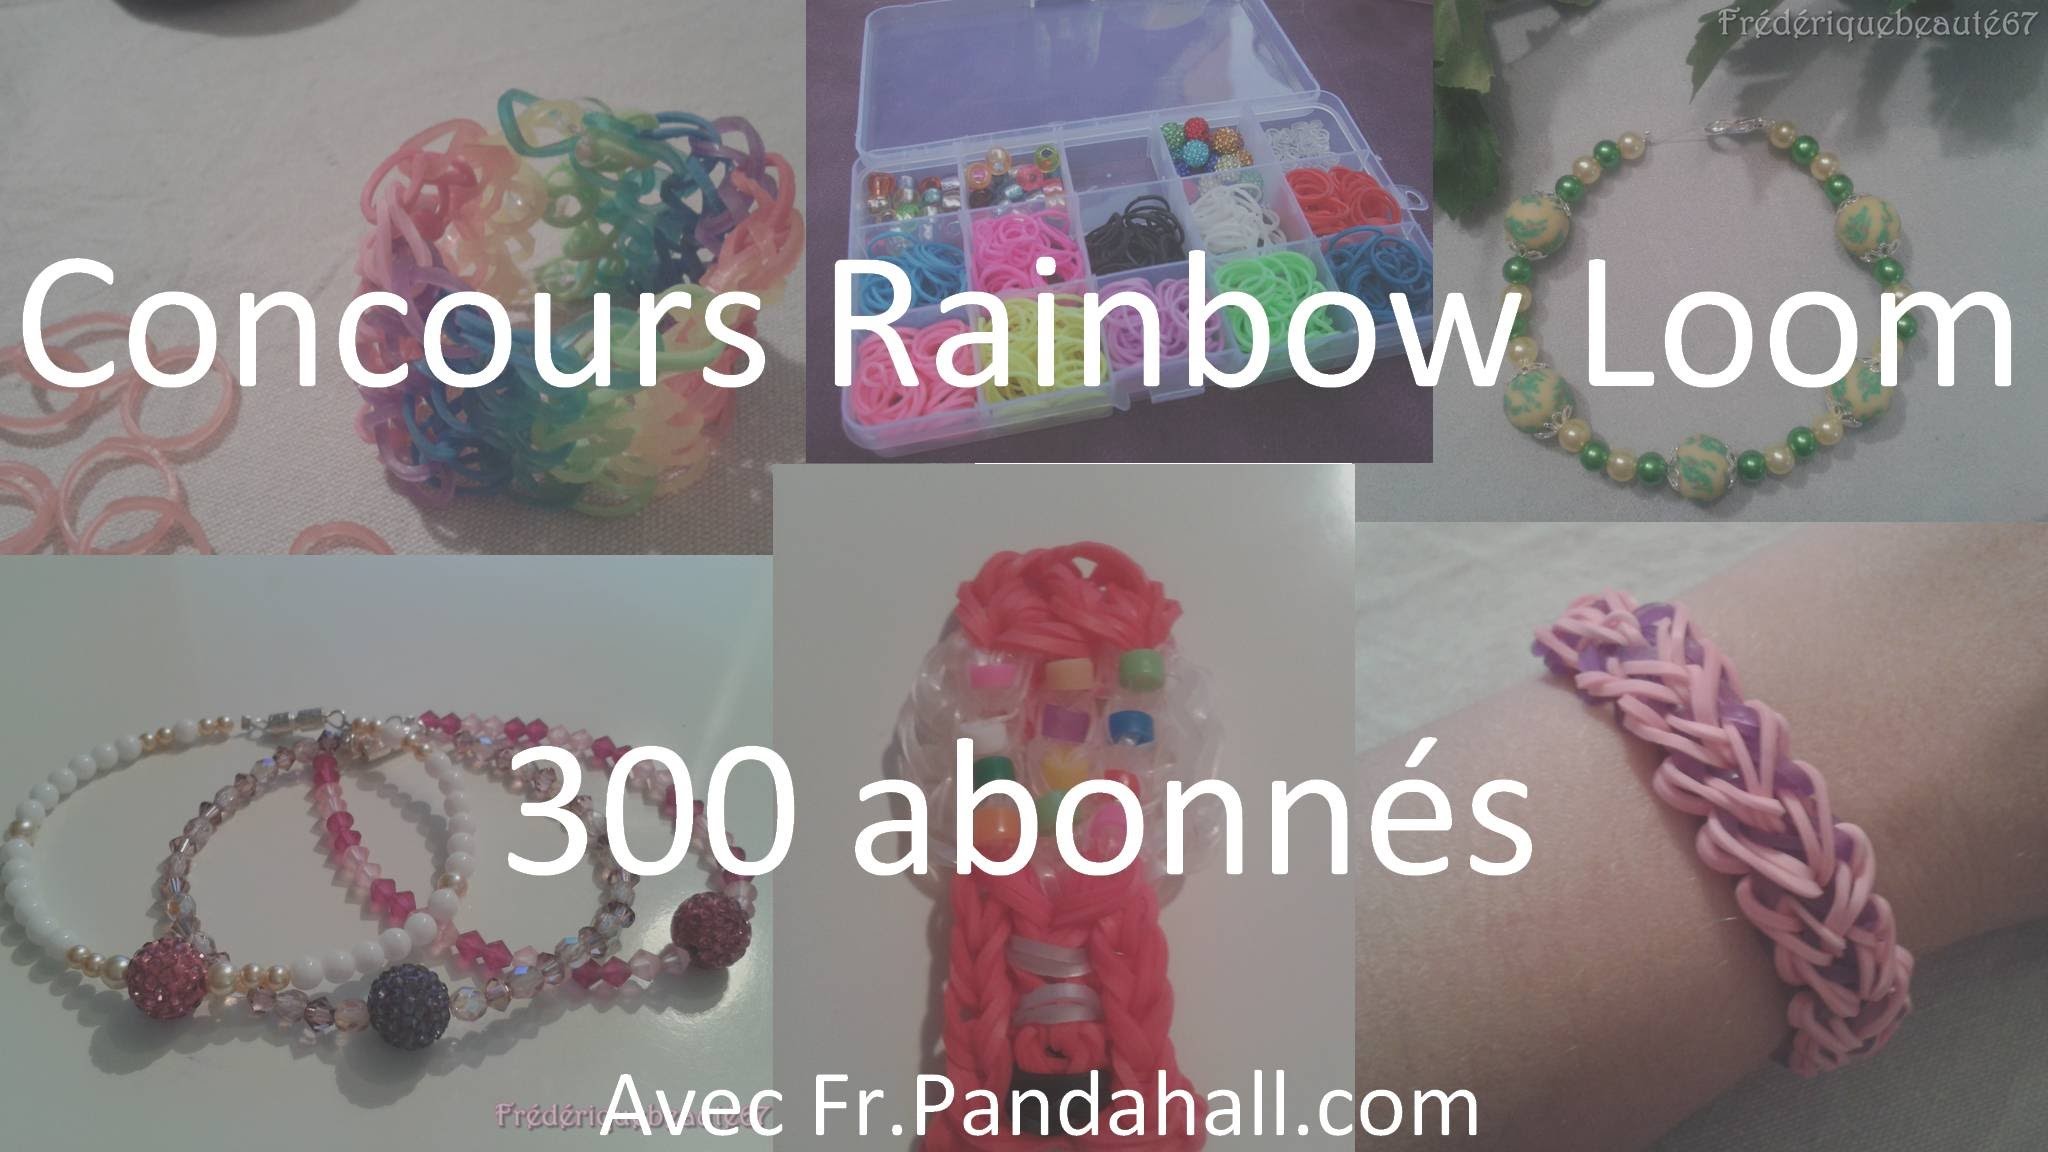 CONCOURS [FERME] Rainbow loom 300 Abonnés avec Fr.Pandahall.com